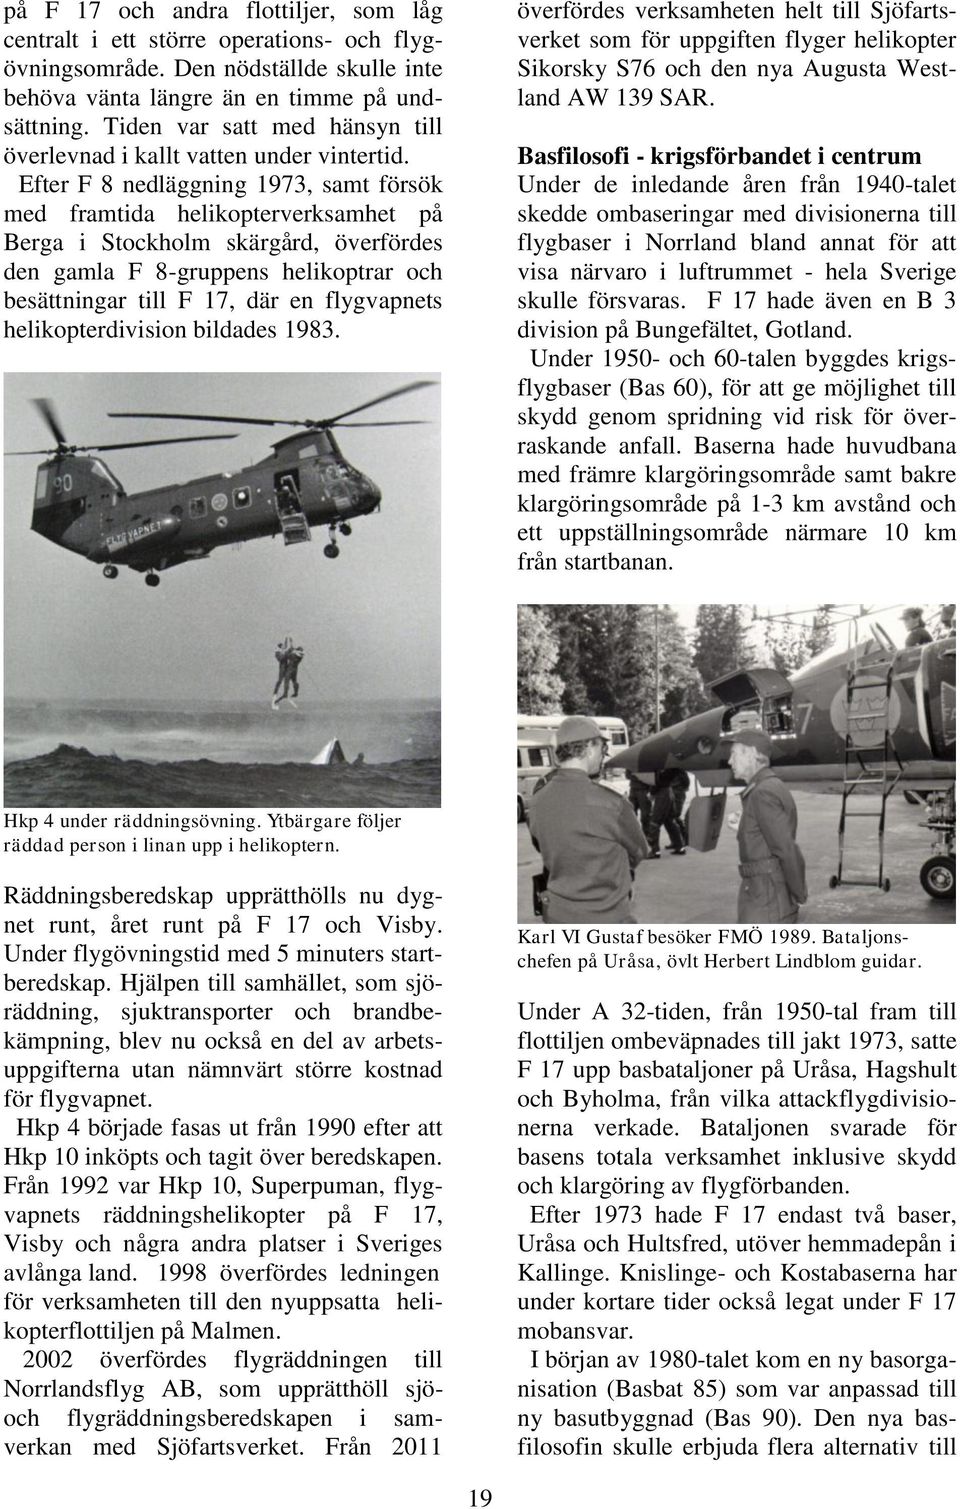 Efter F 8 nedläggning 1973, samt försök med framtida helikopterverksamhet på Berga i Stockholm skärgård, överfördes den gamla F 8-gruppens helikoptrar och besättningar till F 17, där en flygvapnets